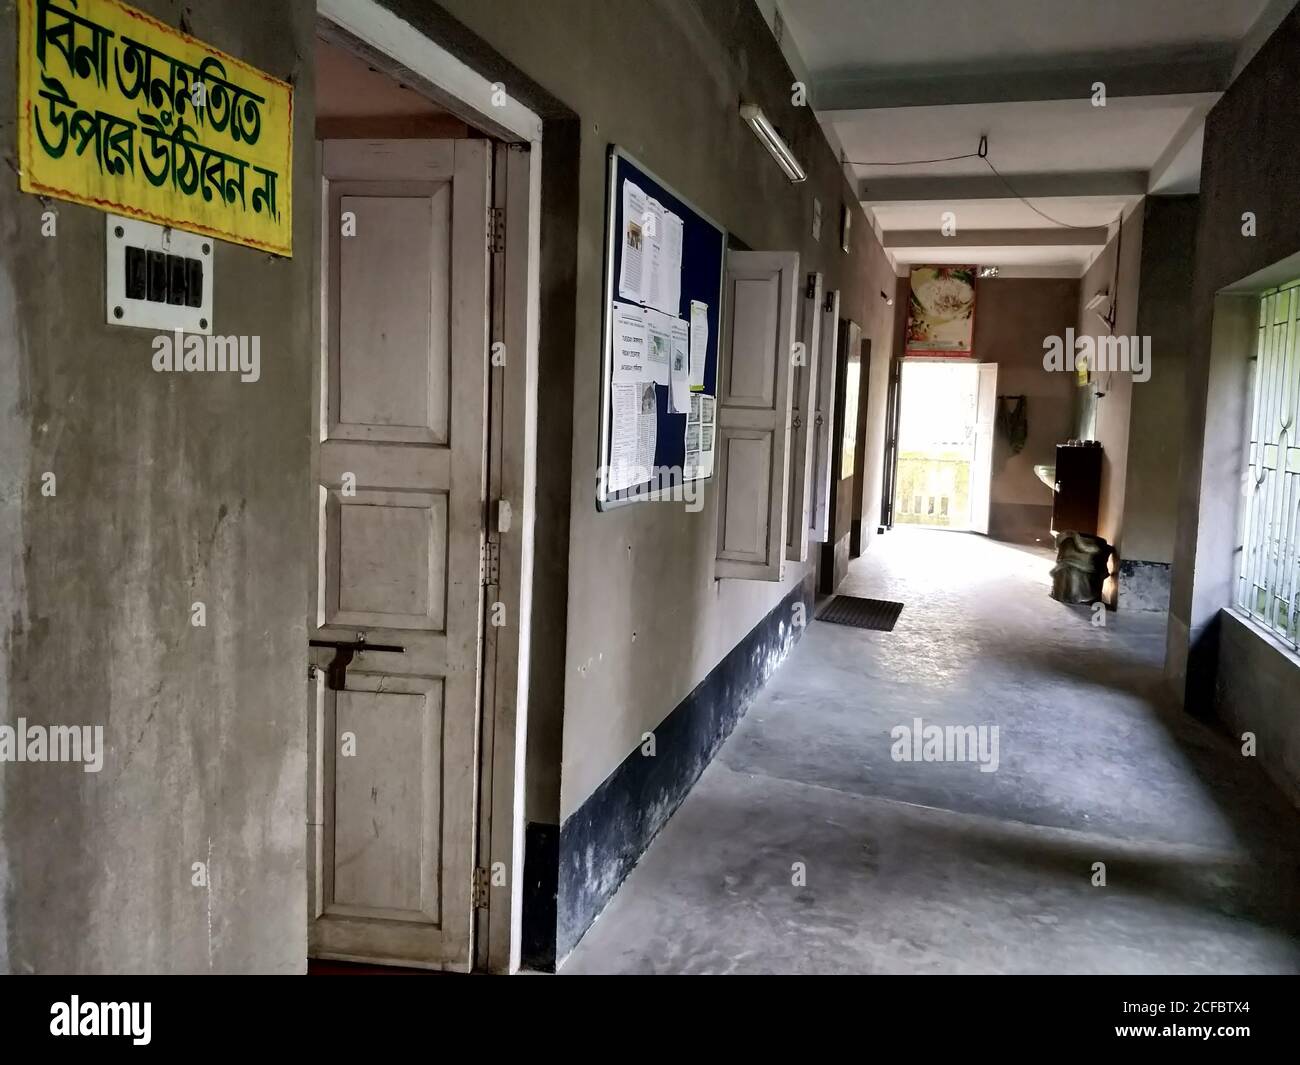 Vecchi corridoi di una scuola nella città di Joygopalpur del Bengala Occidentale, India. Testo bengalese letto "senza permesso non salire" - 9 febbraio 2018 Foto Stock